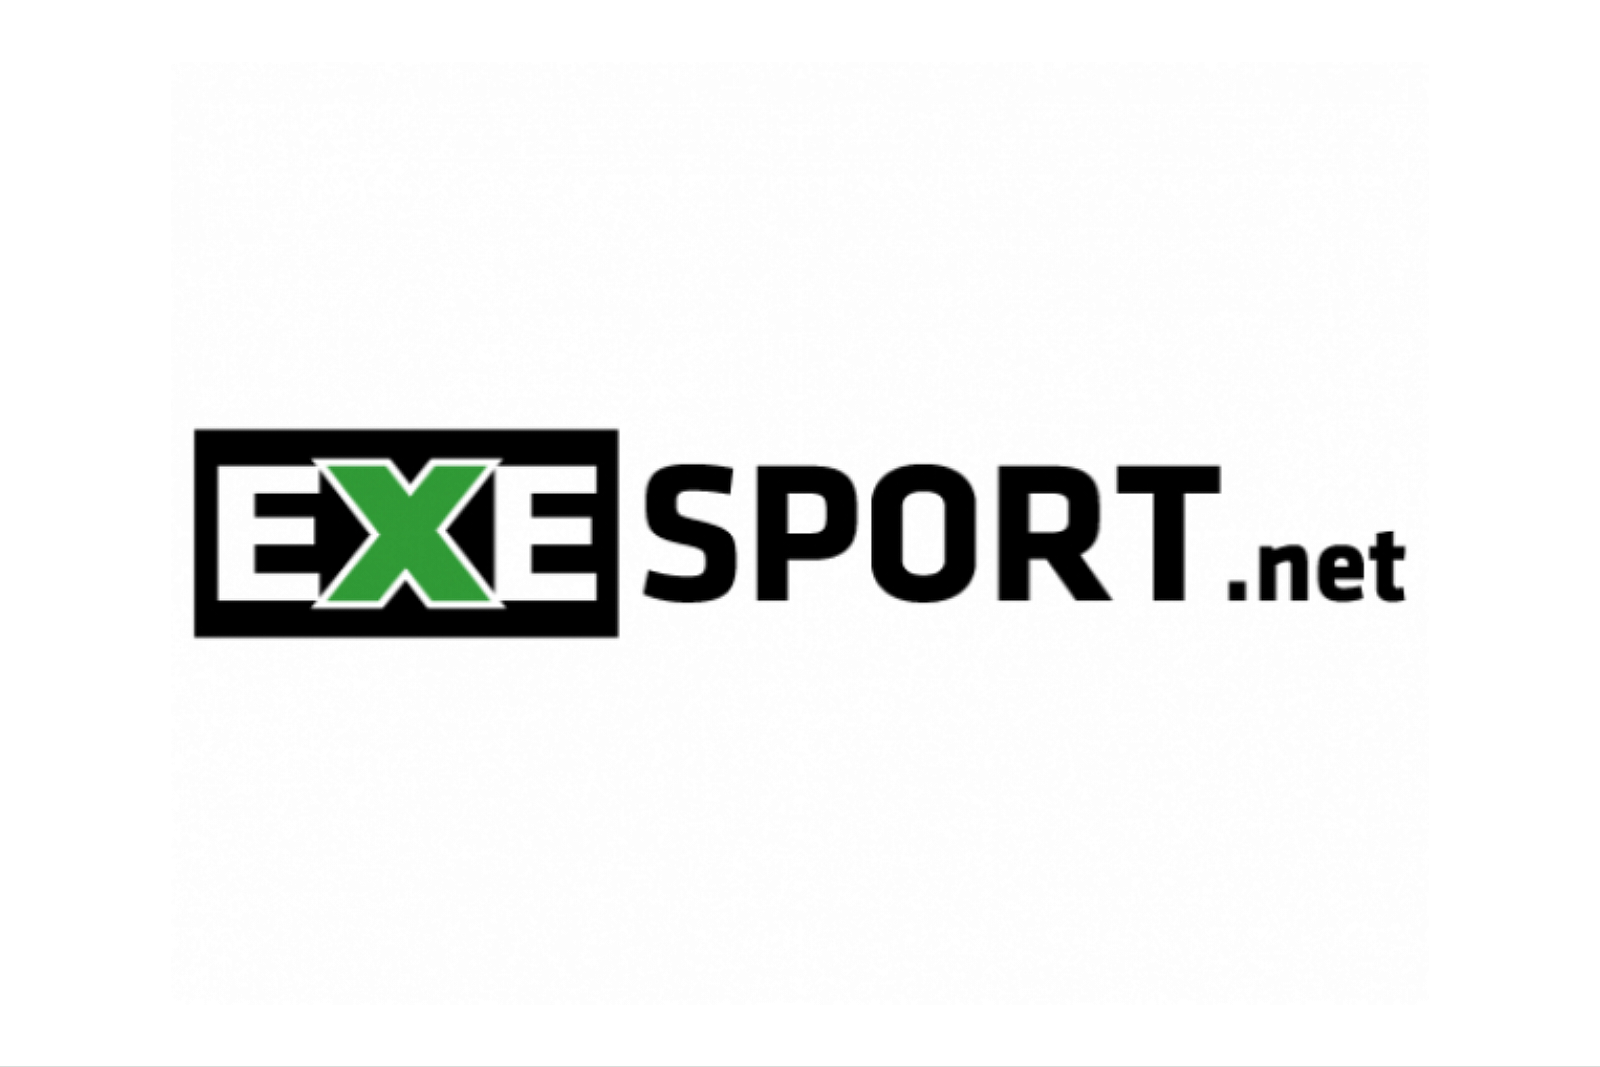 Partnerská spolupráce se značkou EXE Sport